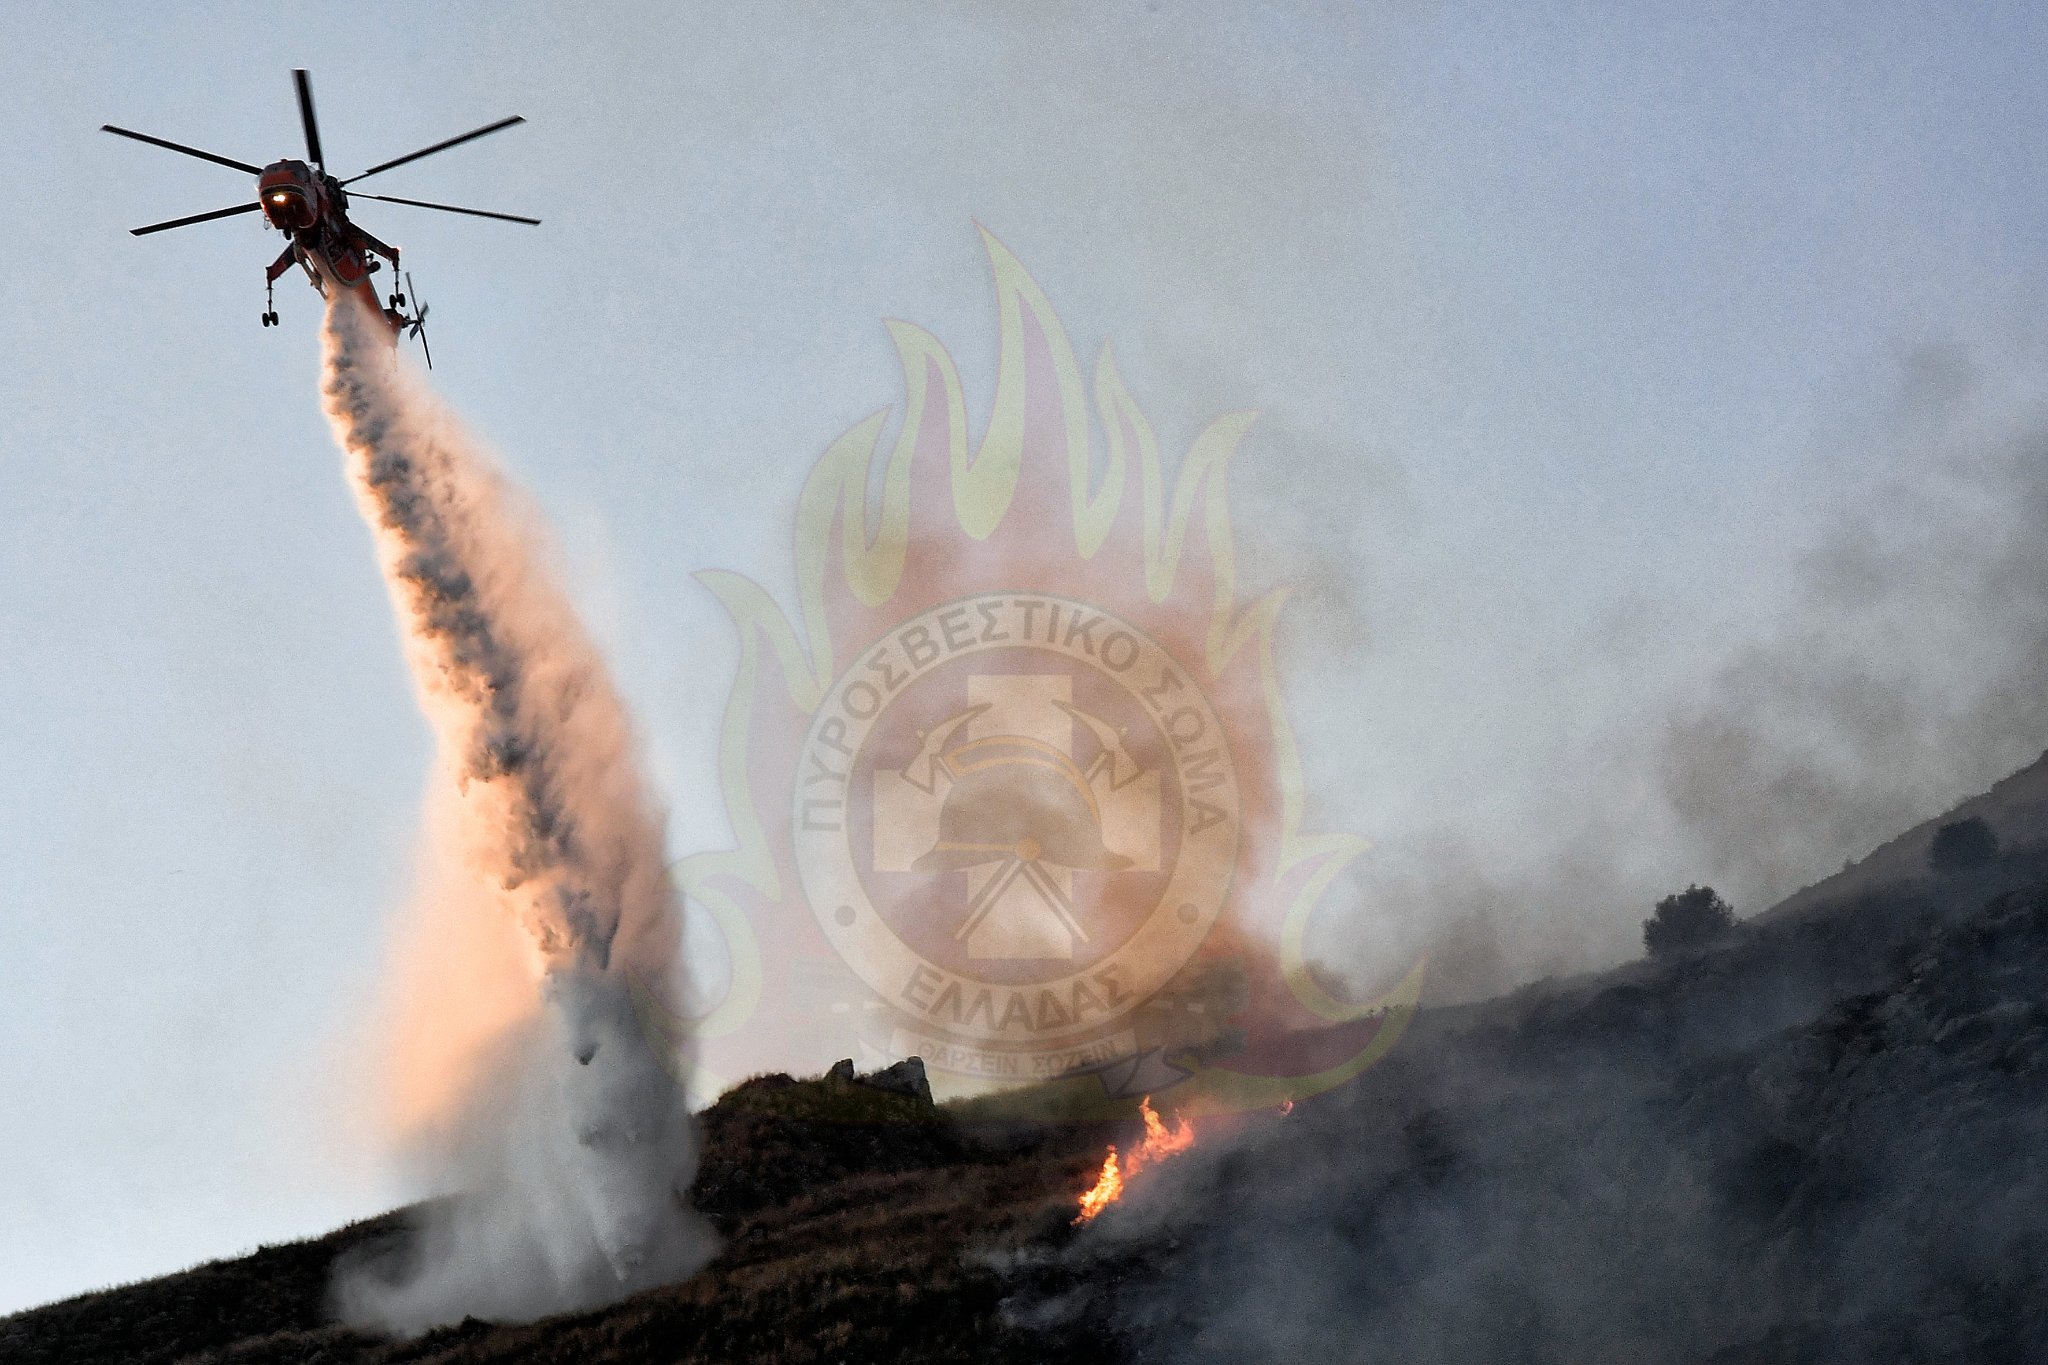 Άγιοι Θεόδωροι: Φωτιά σε δύσβατη περιοχή κινητοποίησε ισχυρές πυροσβεστικές δυνάμεις και ελικόπτερο